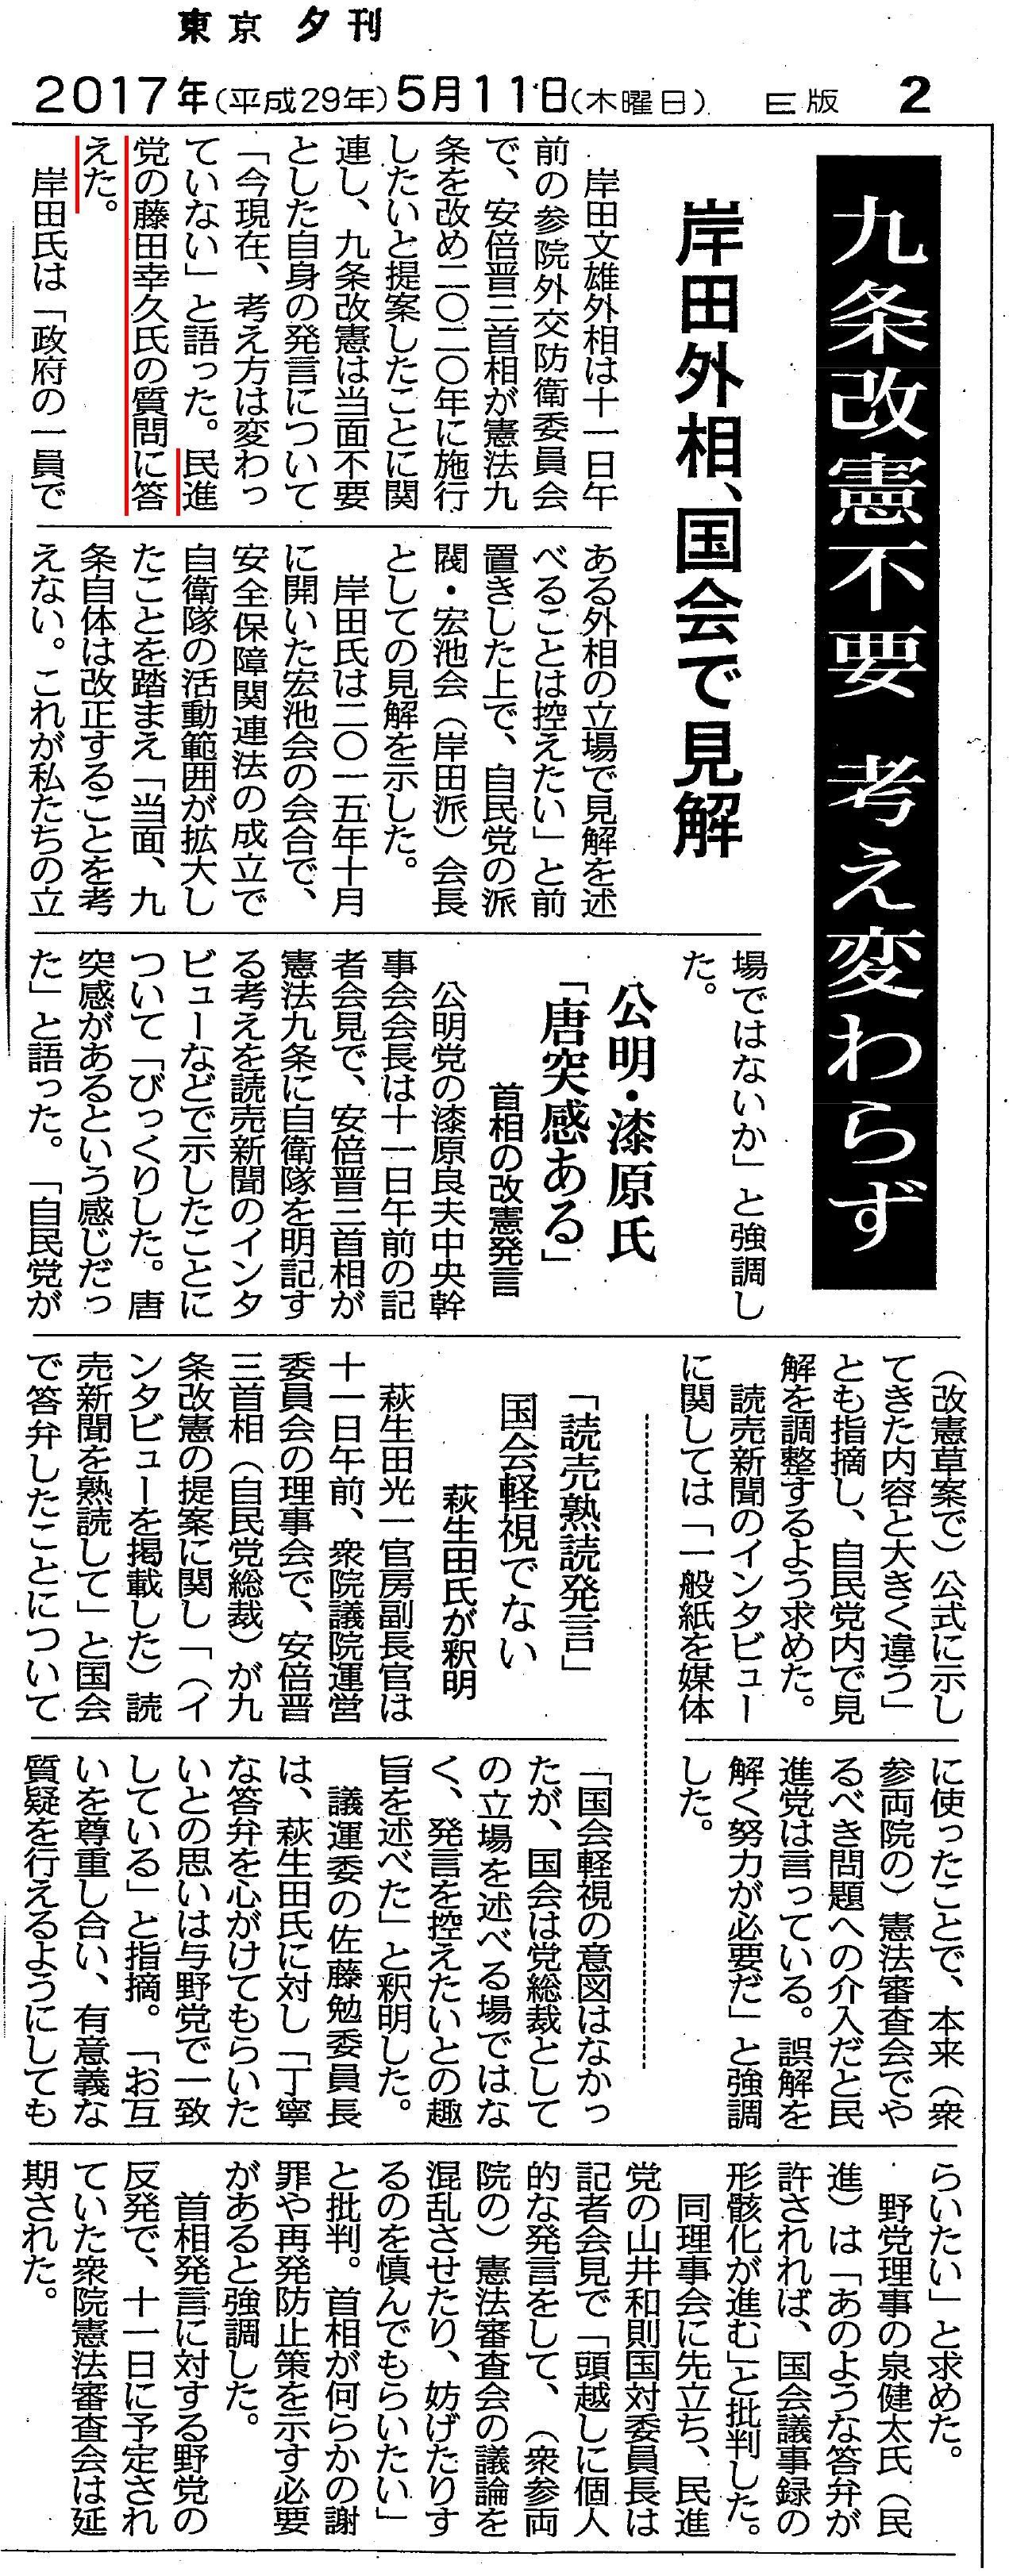 【東京新聞】九条改憲不要　考え変わらず　岸田外相、国会で見解